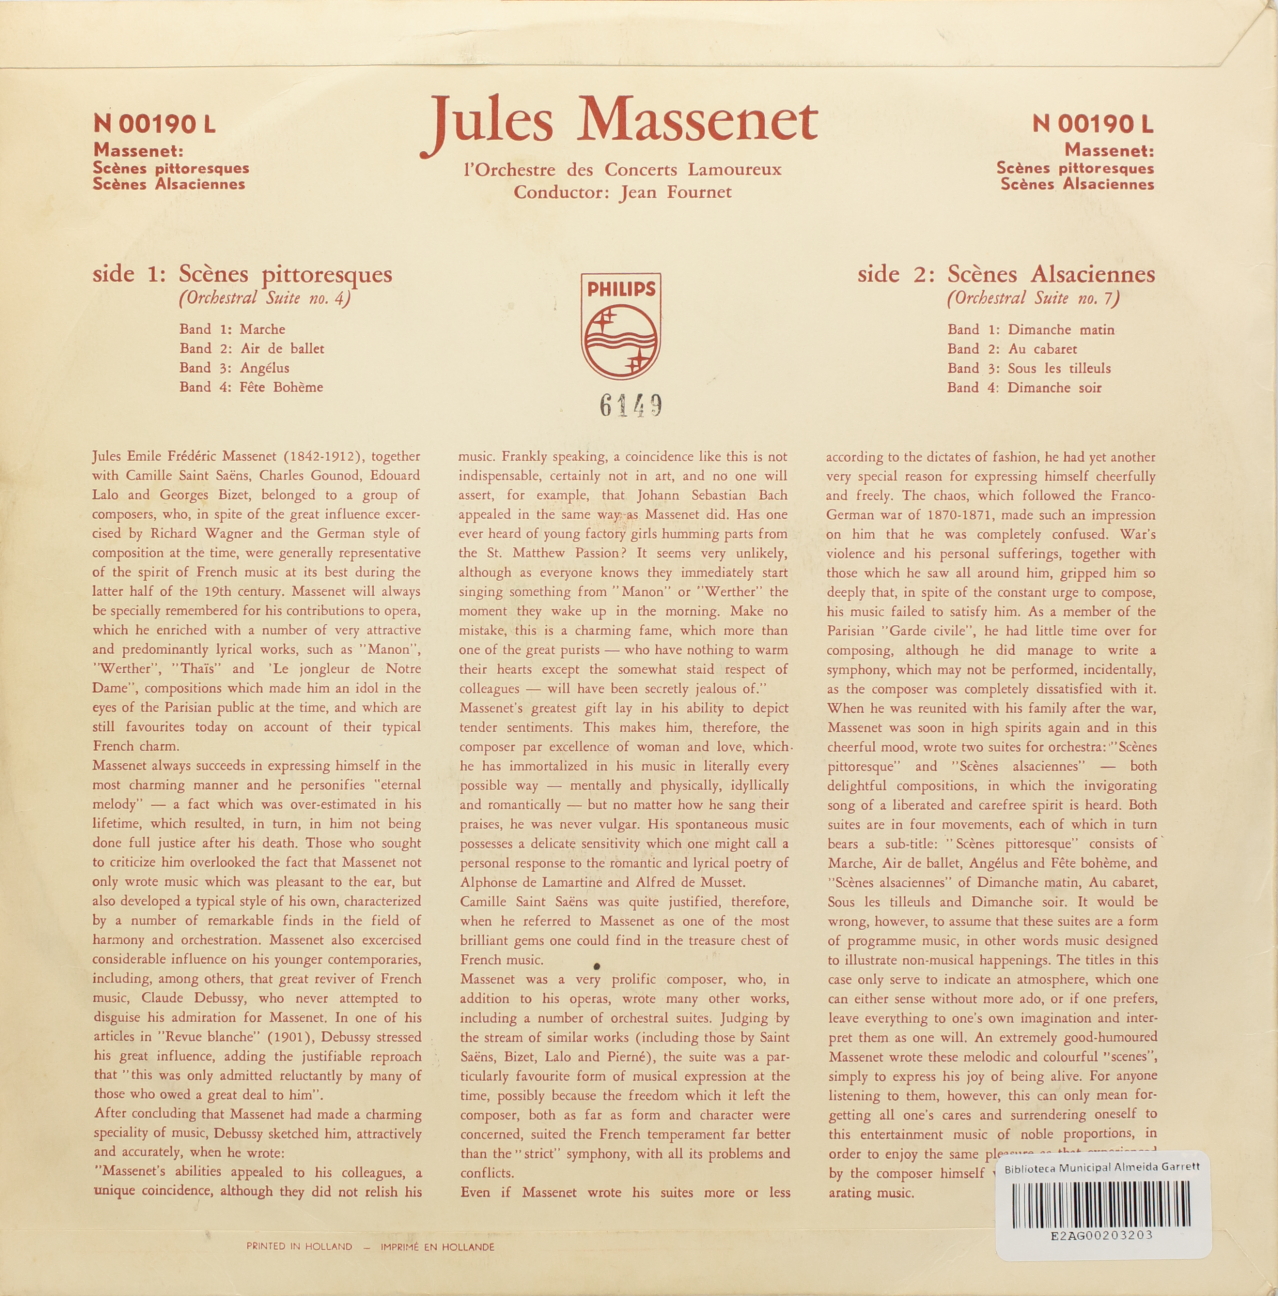 Massenet: Scènnes Pittoresques - Orchestral Suite Nº 4; Scènnes Alsacienne - Orchestral Suite Nº